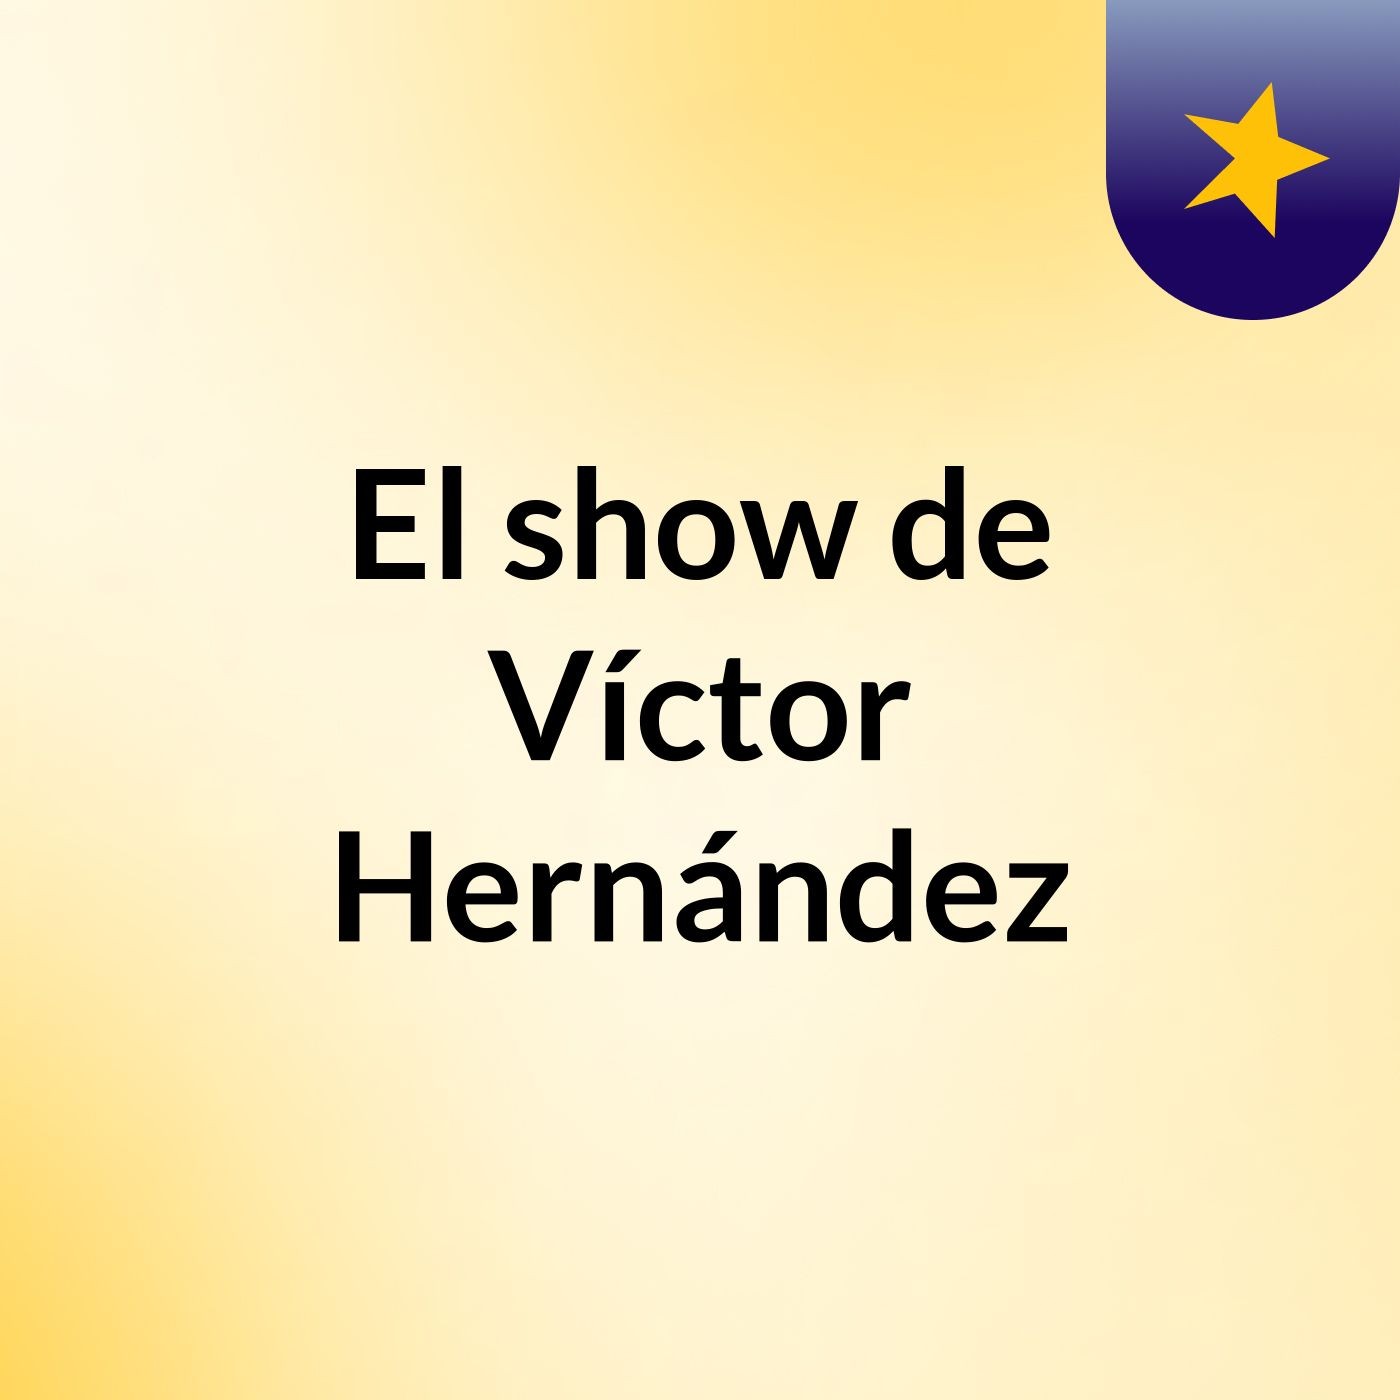 Episodio 2 - El show de Víctor Hernández